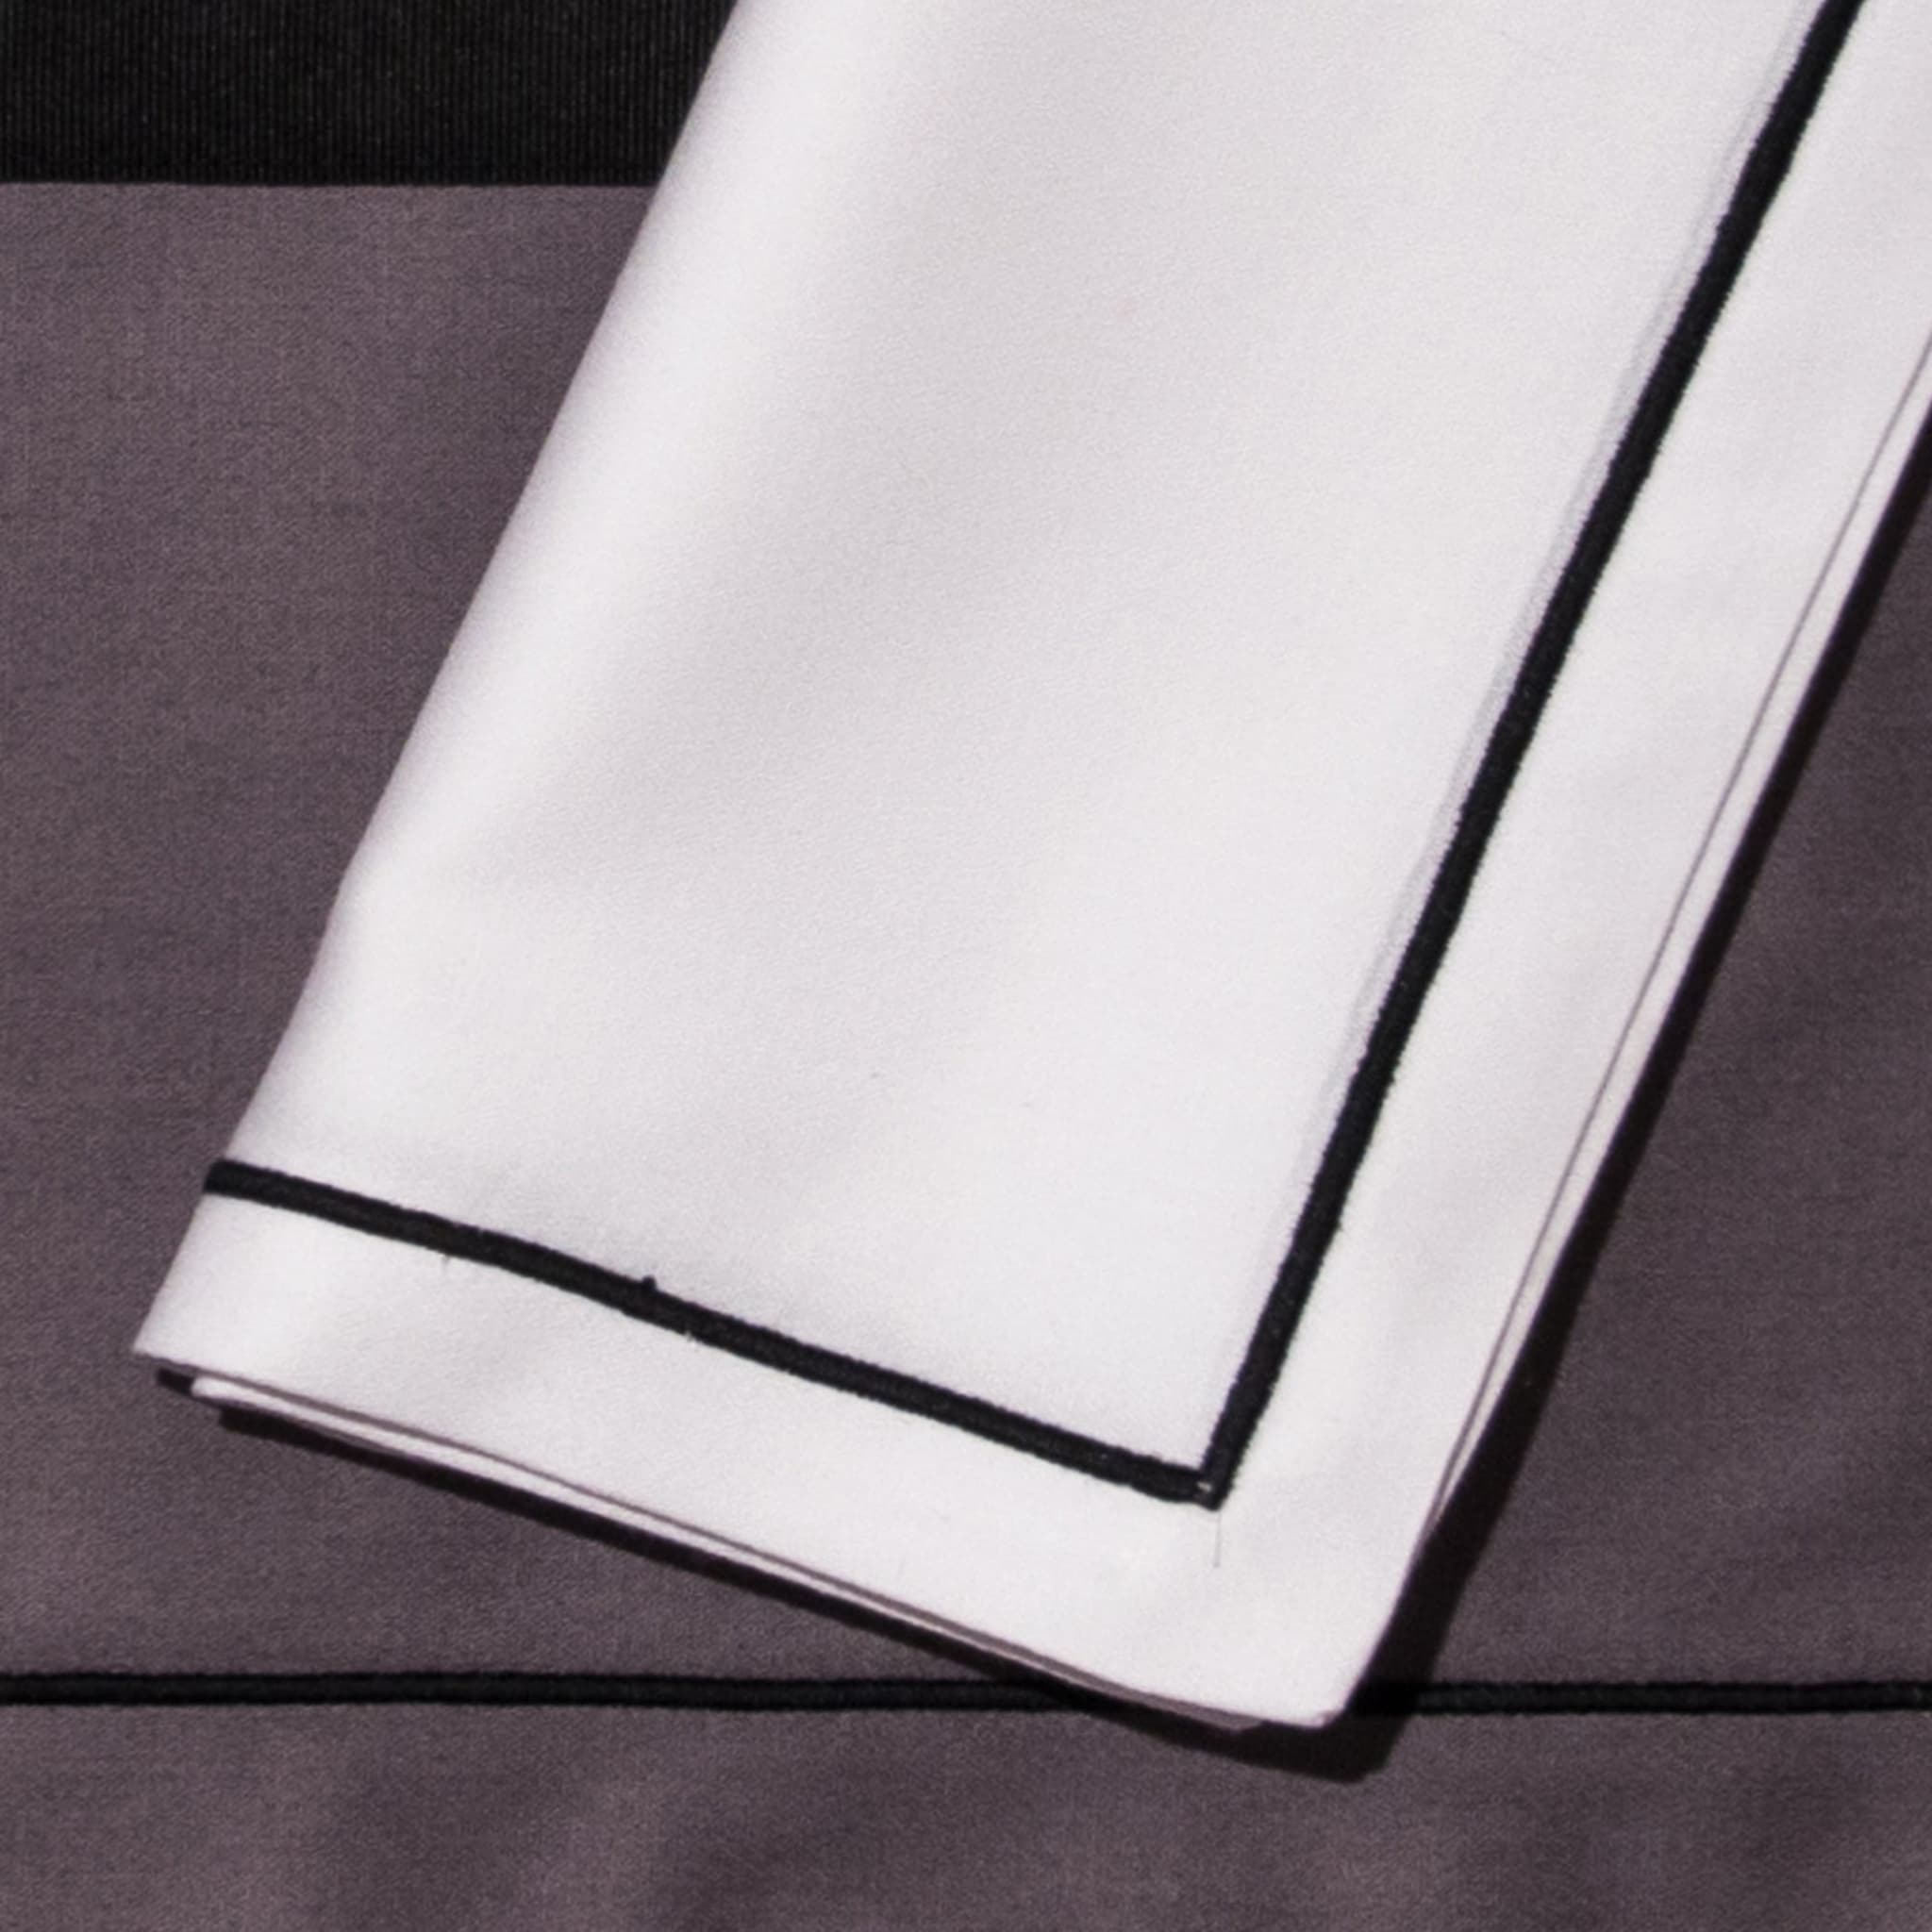 Tovagliette e tovaglioli - Due tonalità di grigio e bianco - Vista alternativa 2